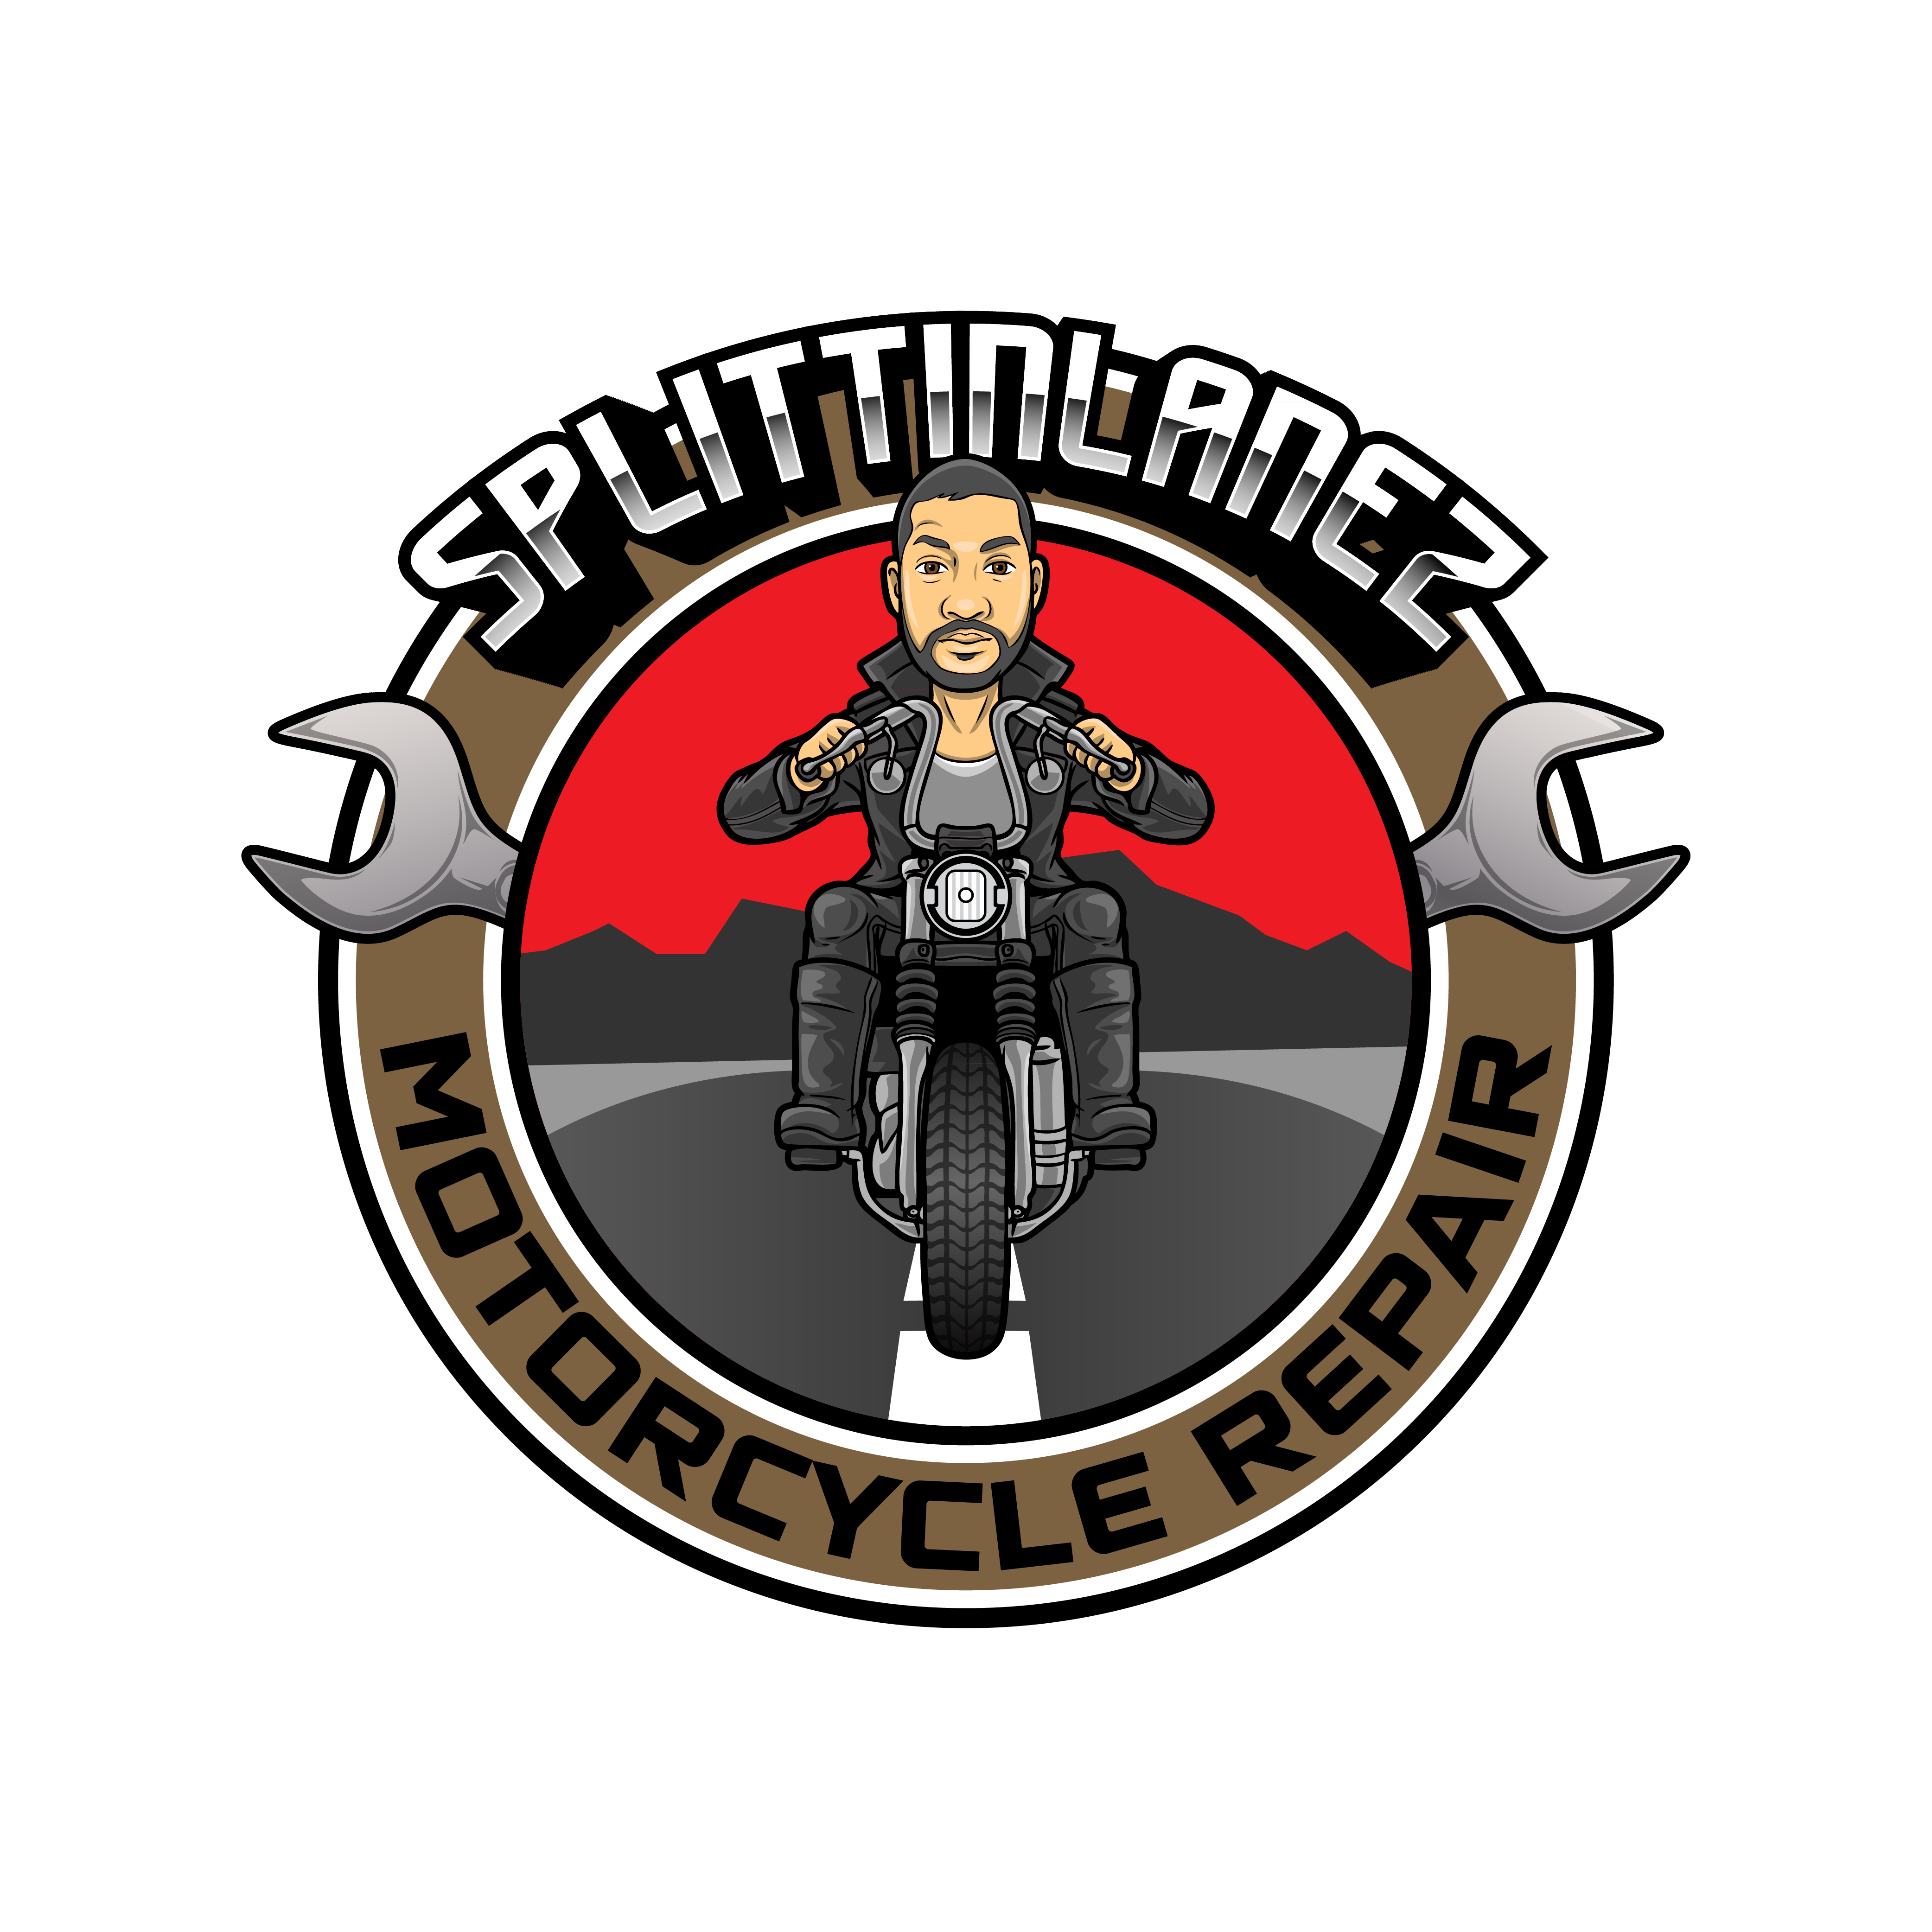 SplittinLanez Motorcycle Repair LLC